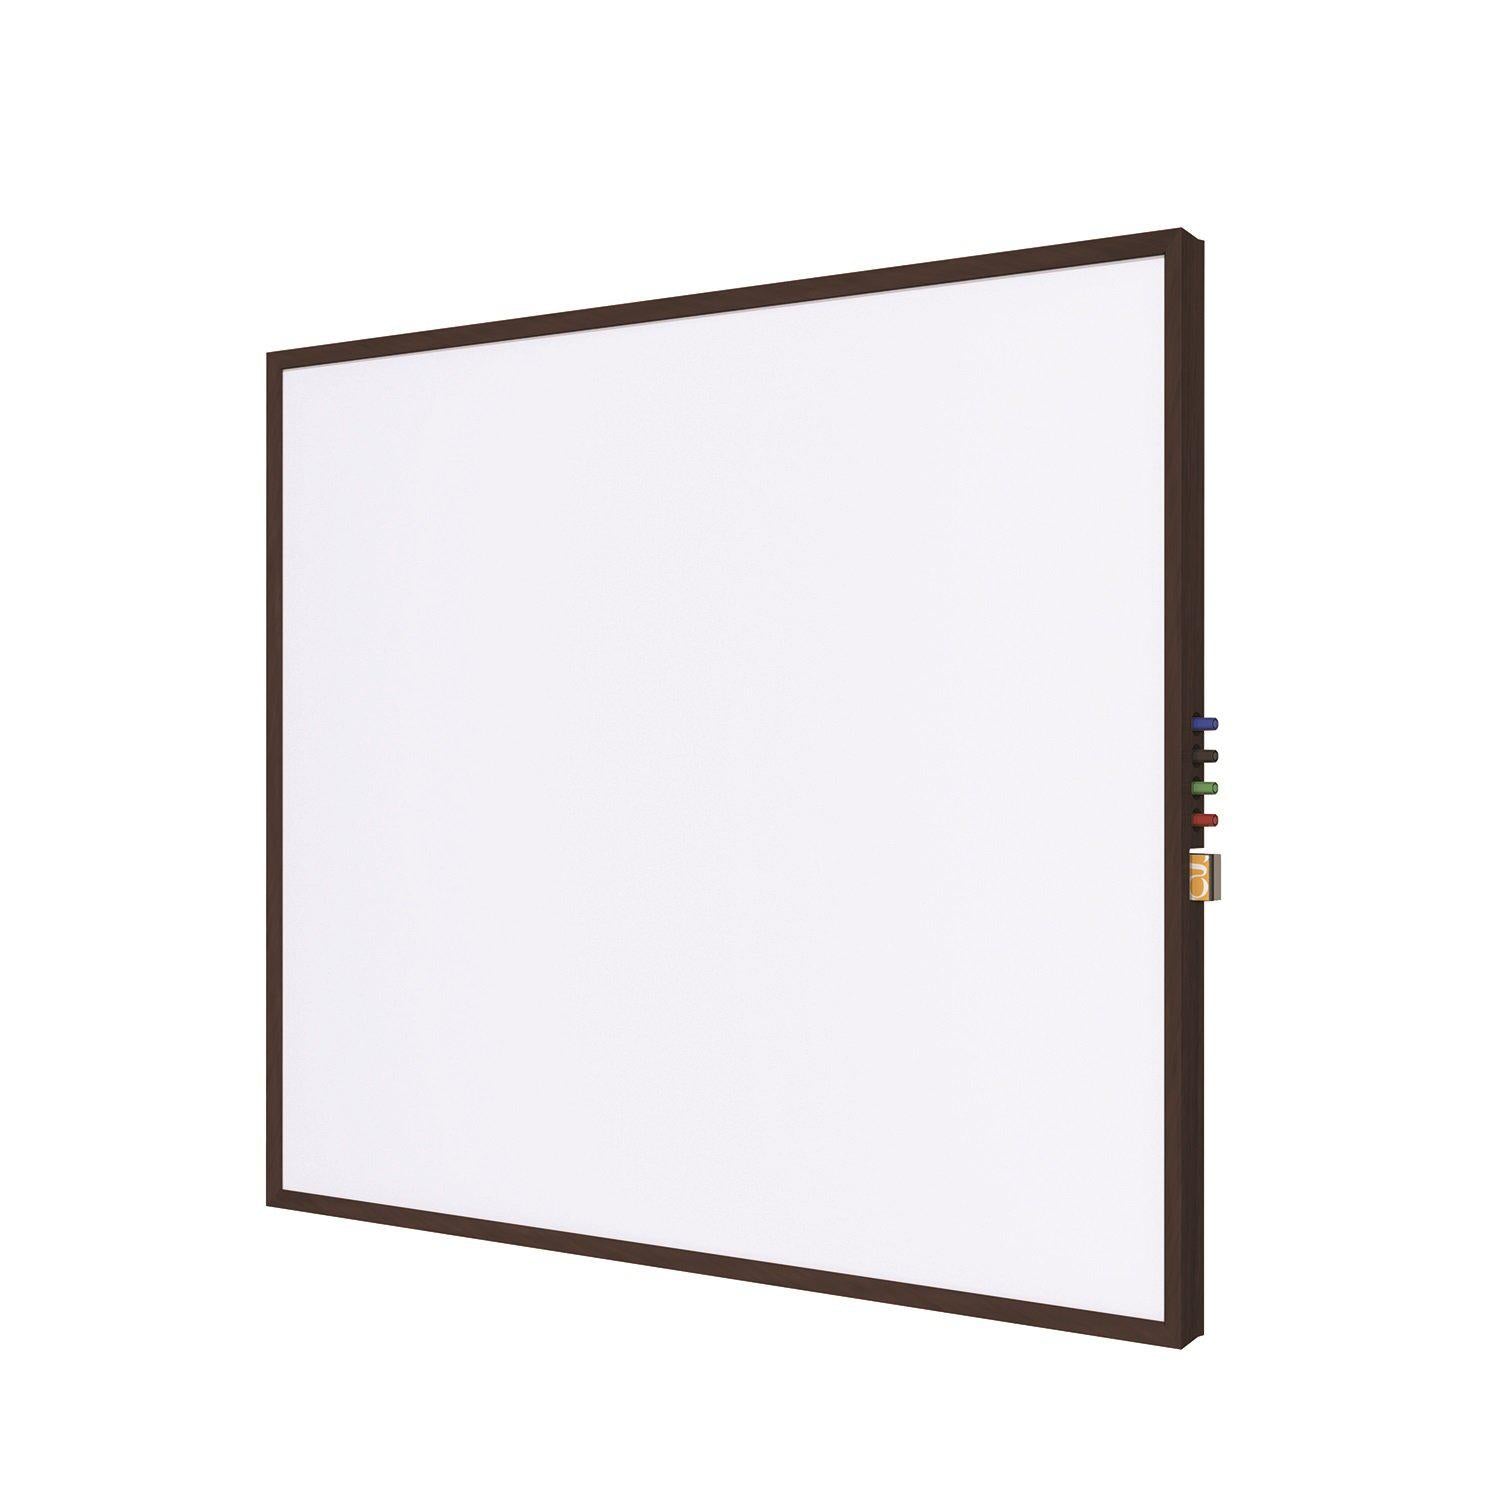 Impression Wood Framed Magnetic Porcelain Whiteboard, 4' H x 4' W